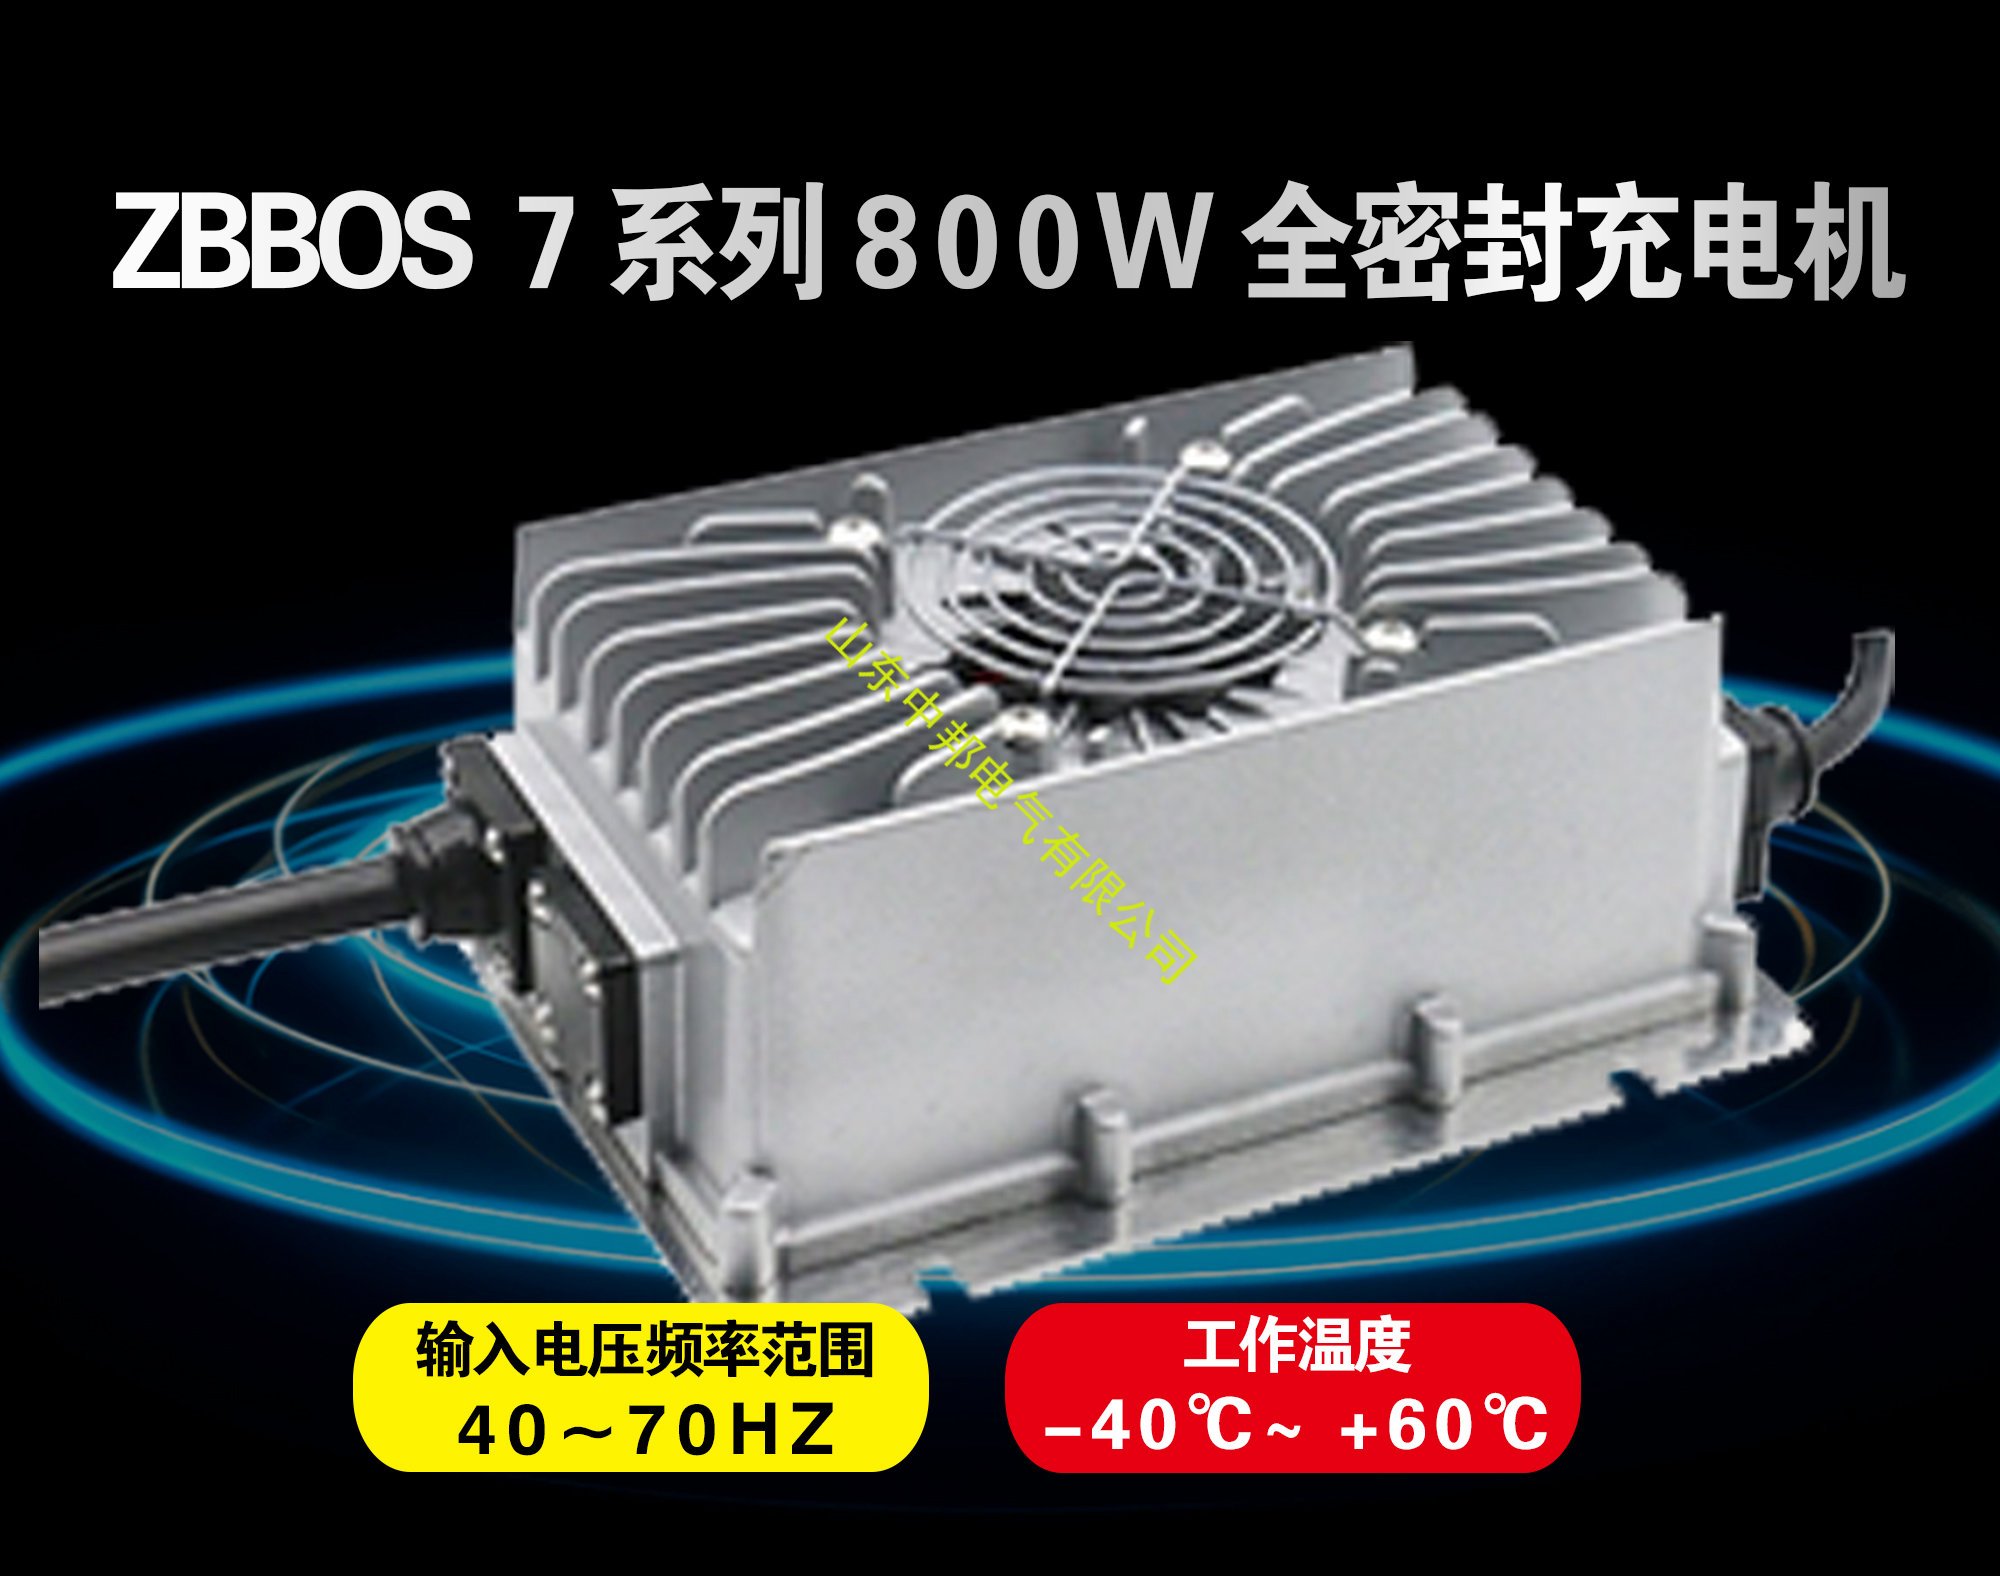 ZBBOS 7系列800W全密封充电机